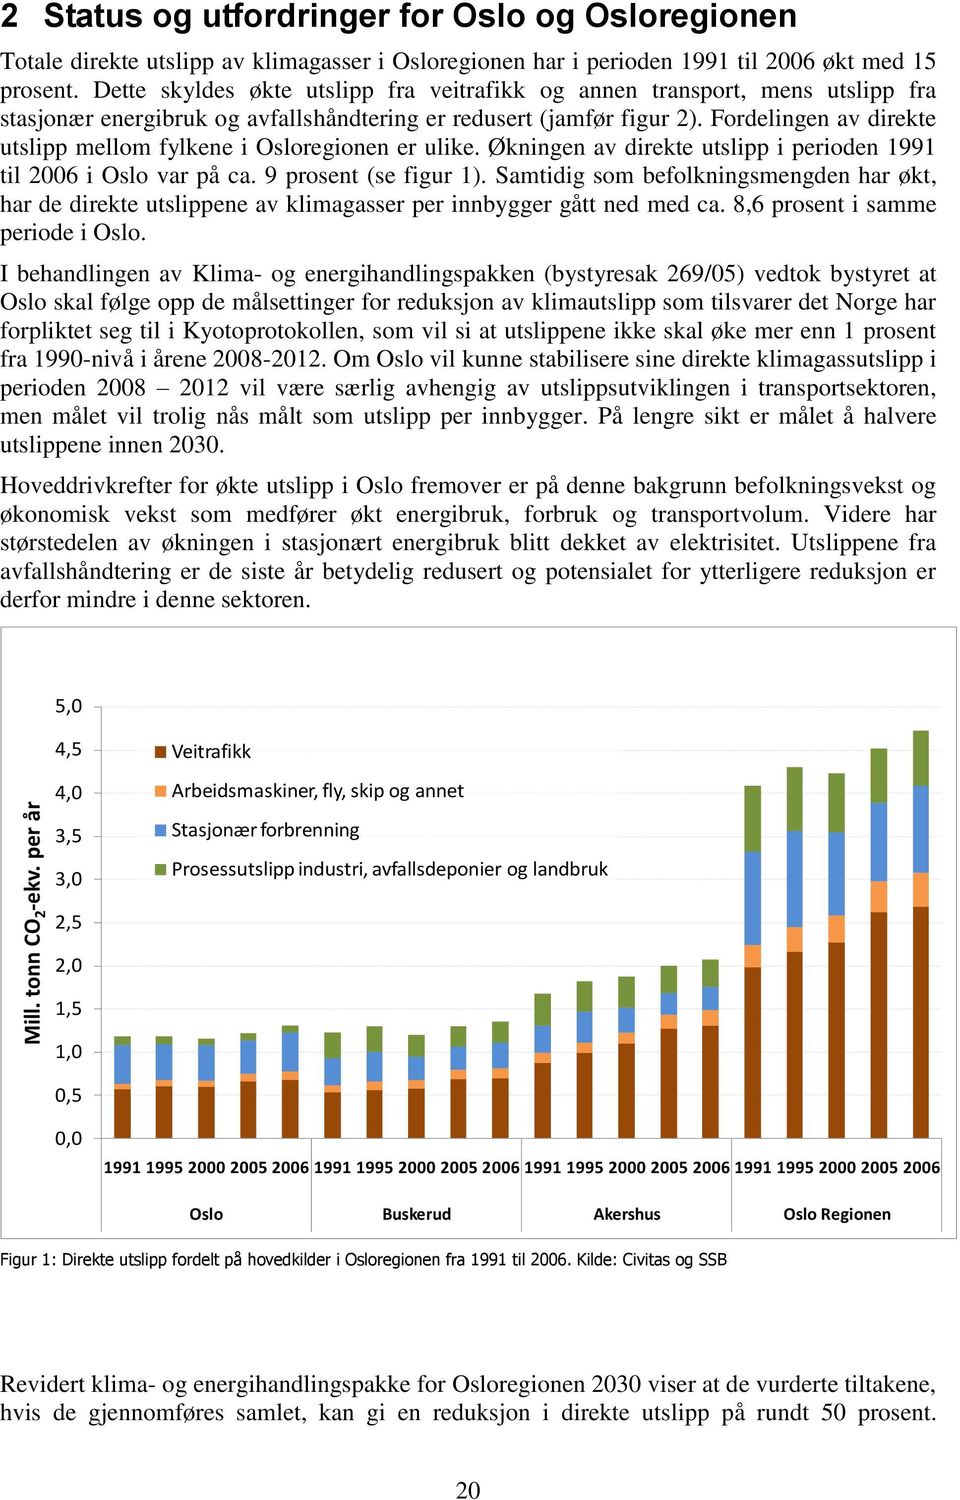 Fordelingen av direkte utslipp mellom fylkene i Osloregionen er ulike. Økningen av direkte utslipp i perioden 1991 til 2006 i Oslo var på ca. 9 prosent (se figur 1).